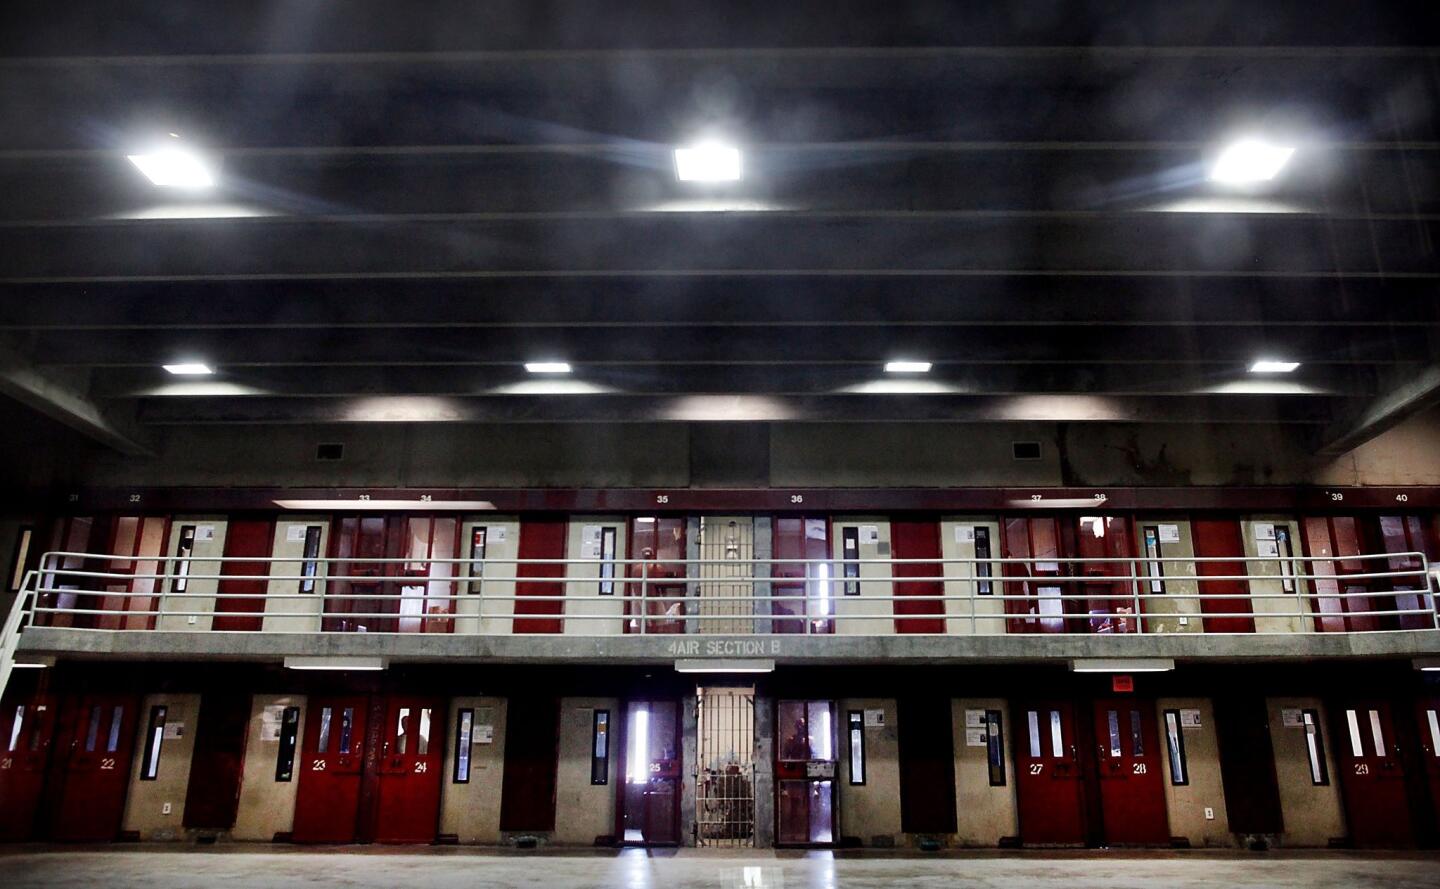 Corcoran State Prison